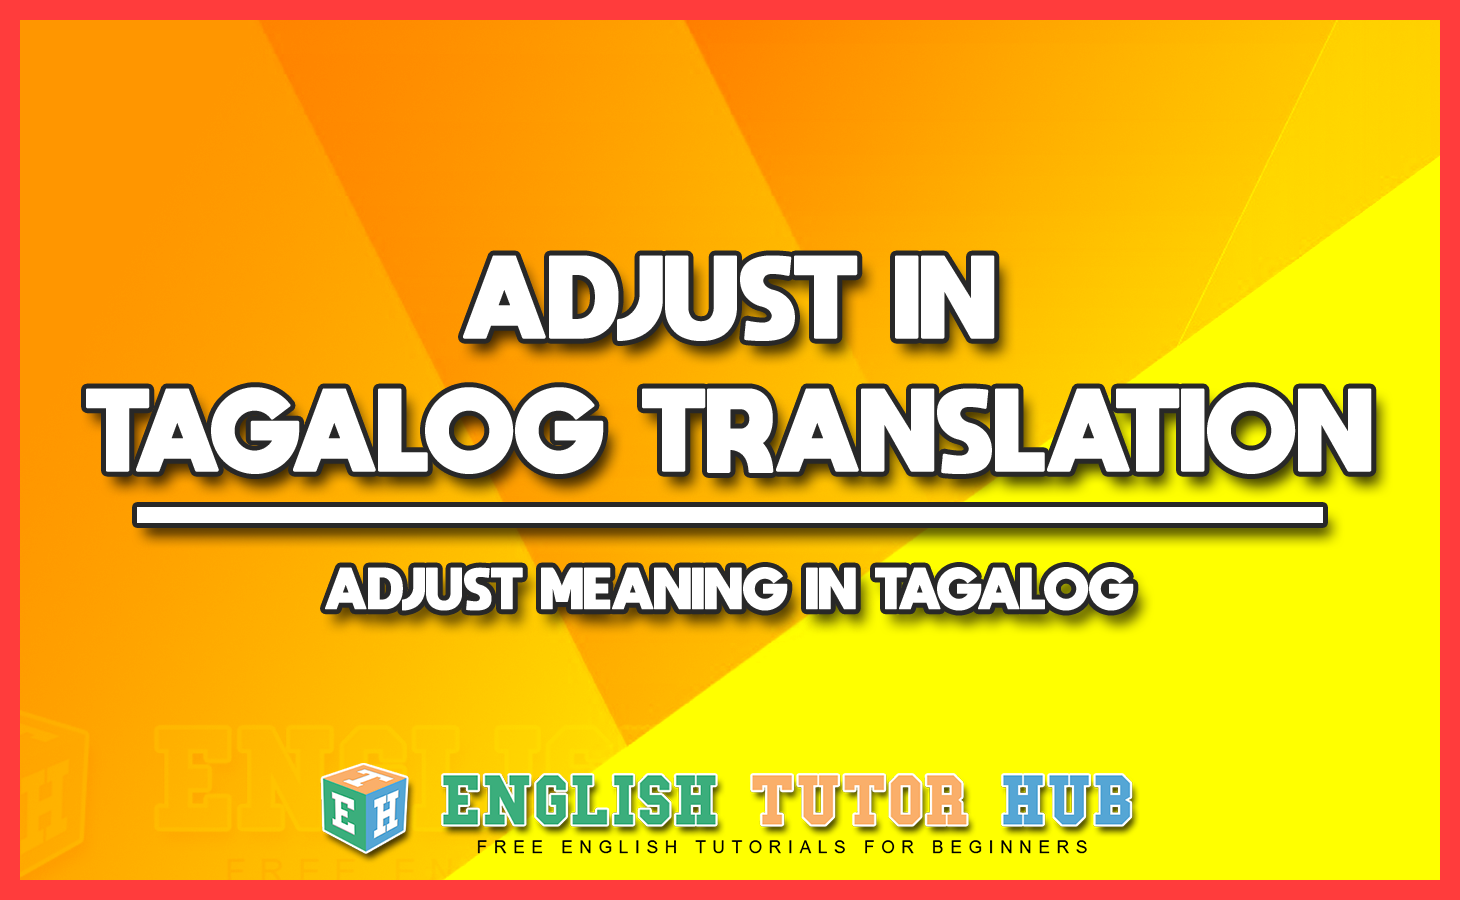 ADJUST IN TAGALOG TRANSLATION - ADJUST MEANING IN TAGALOG